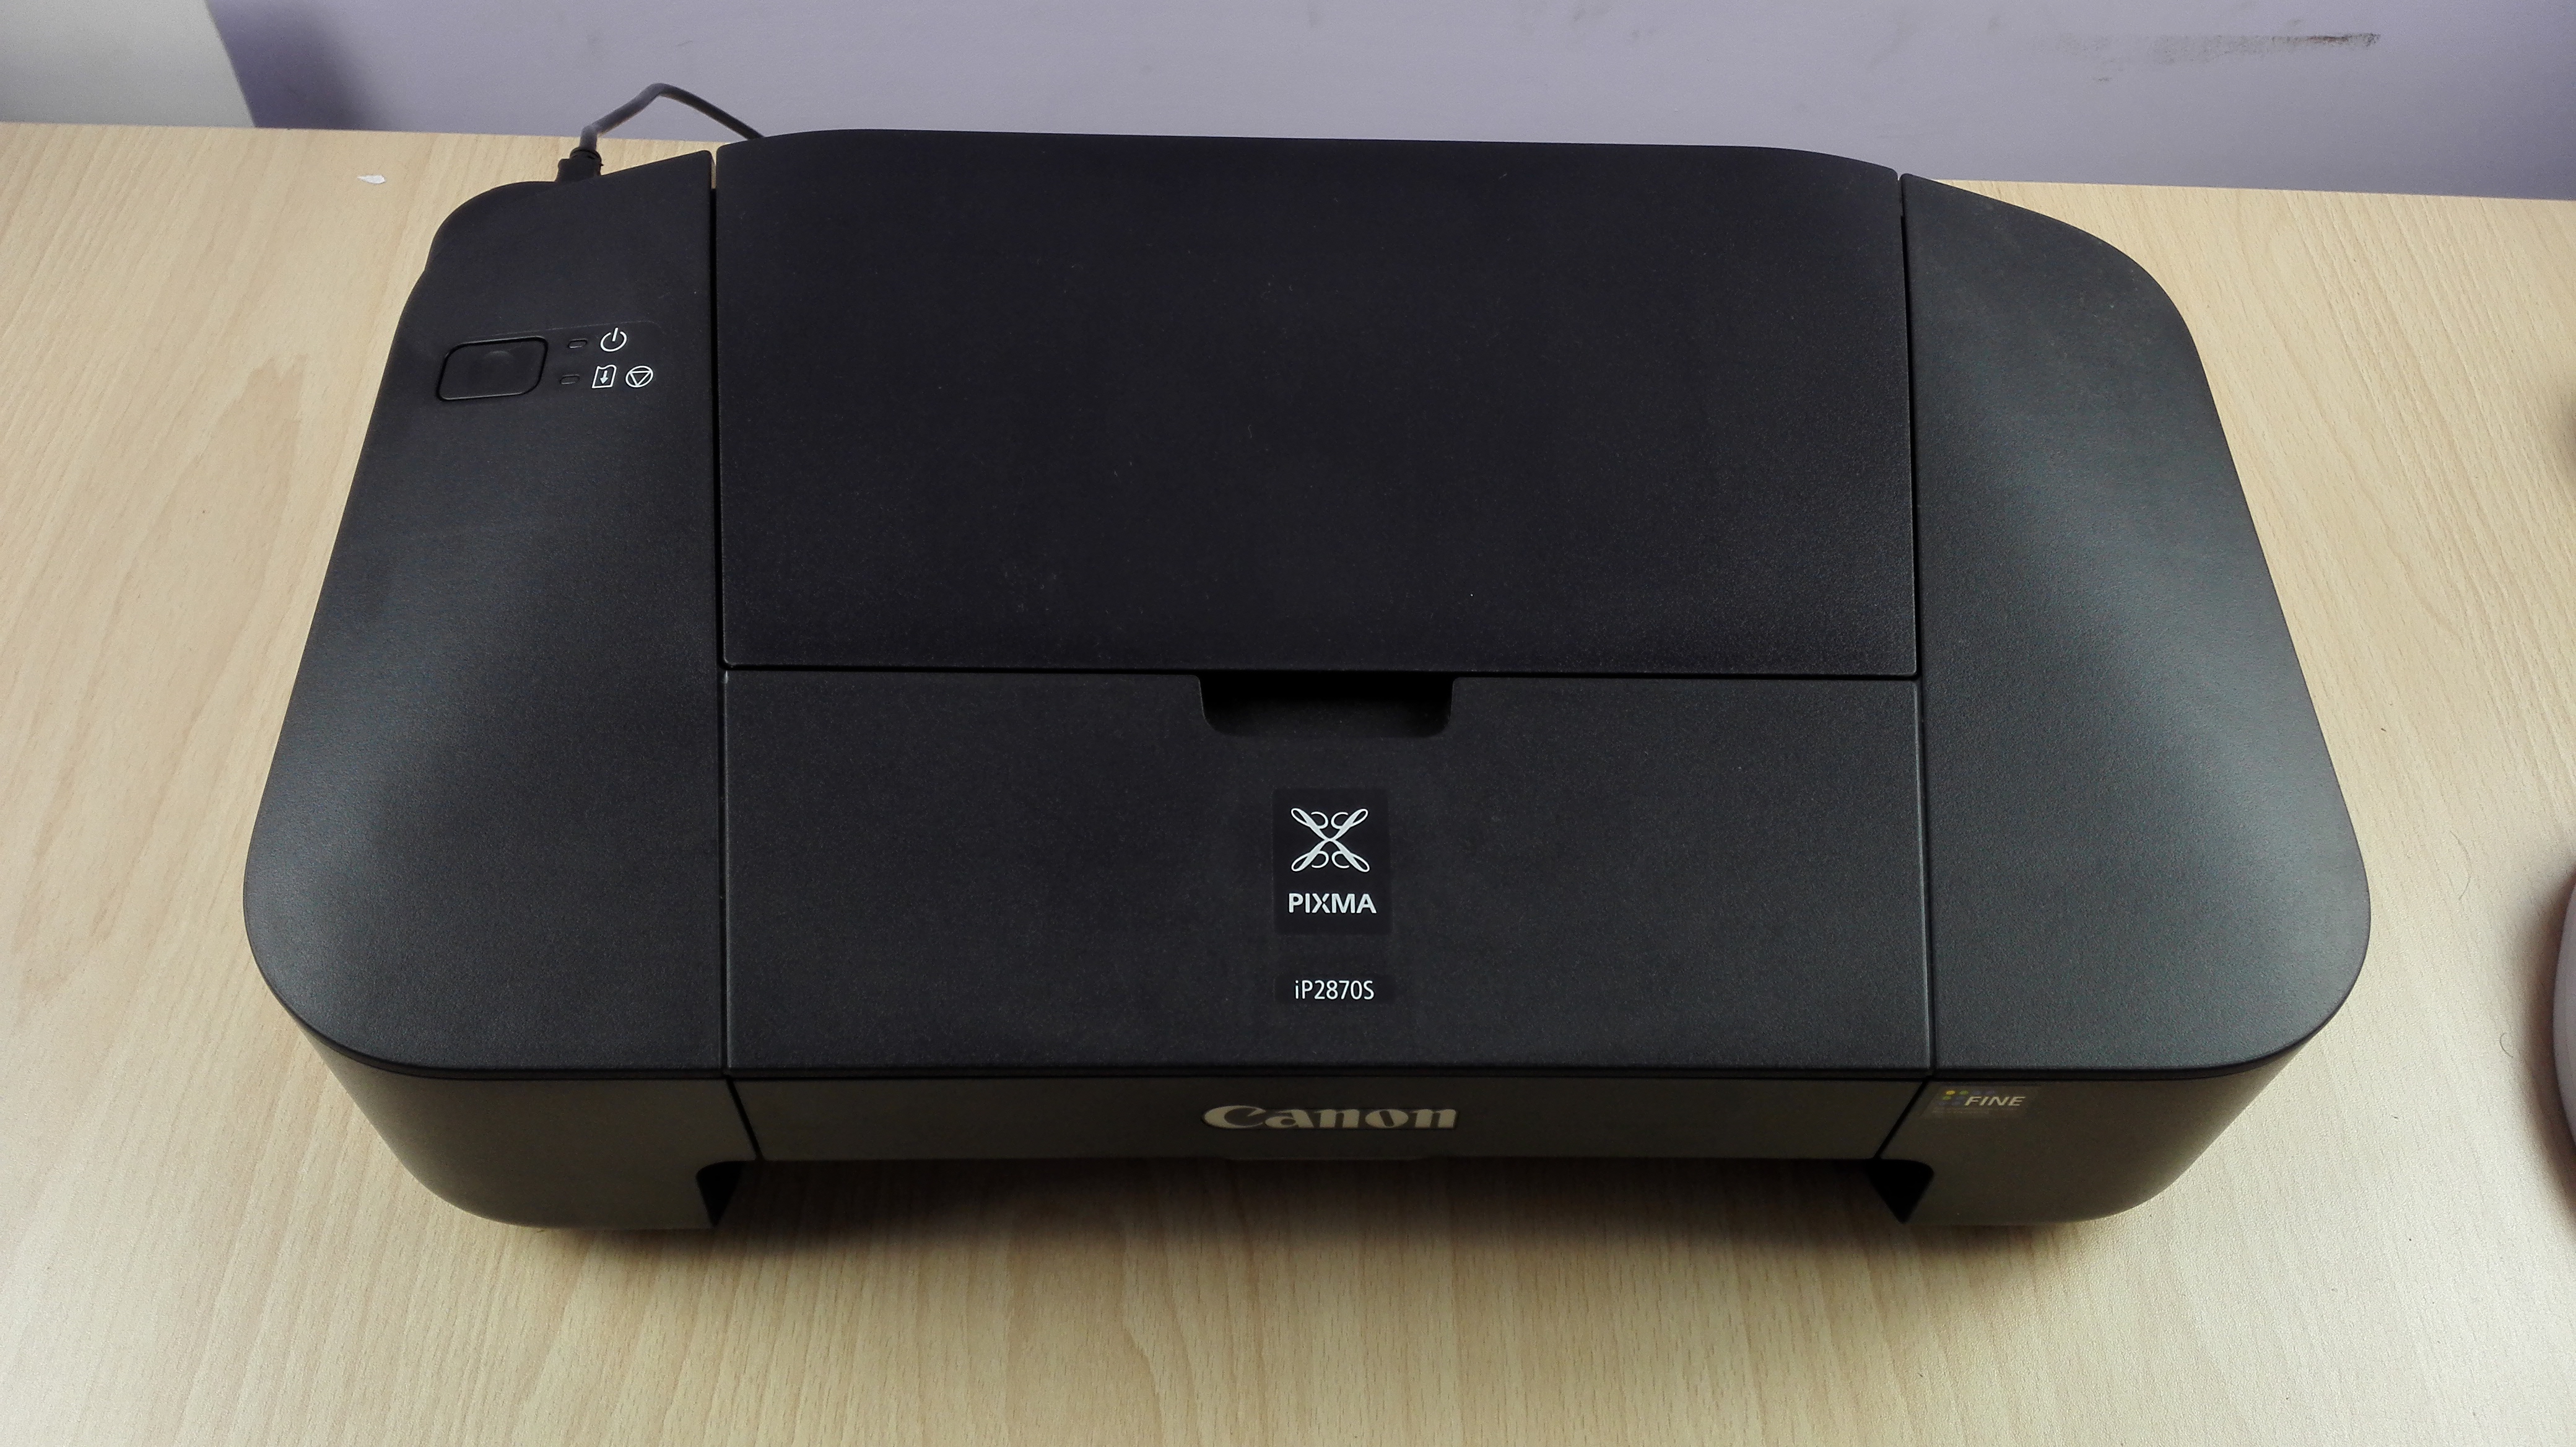 Recenze, funkce a přehled tiskárny Canon Pixma IP 2870S